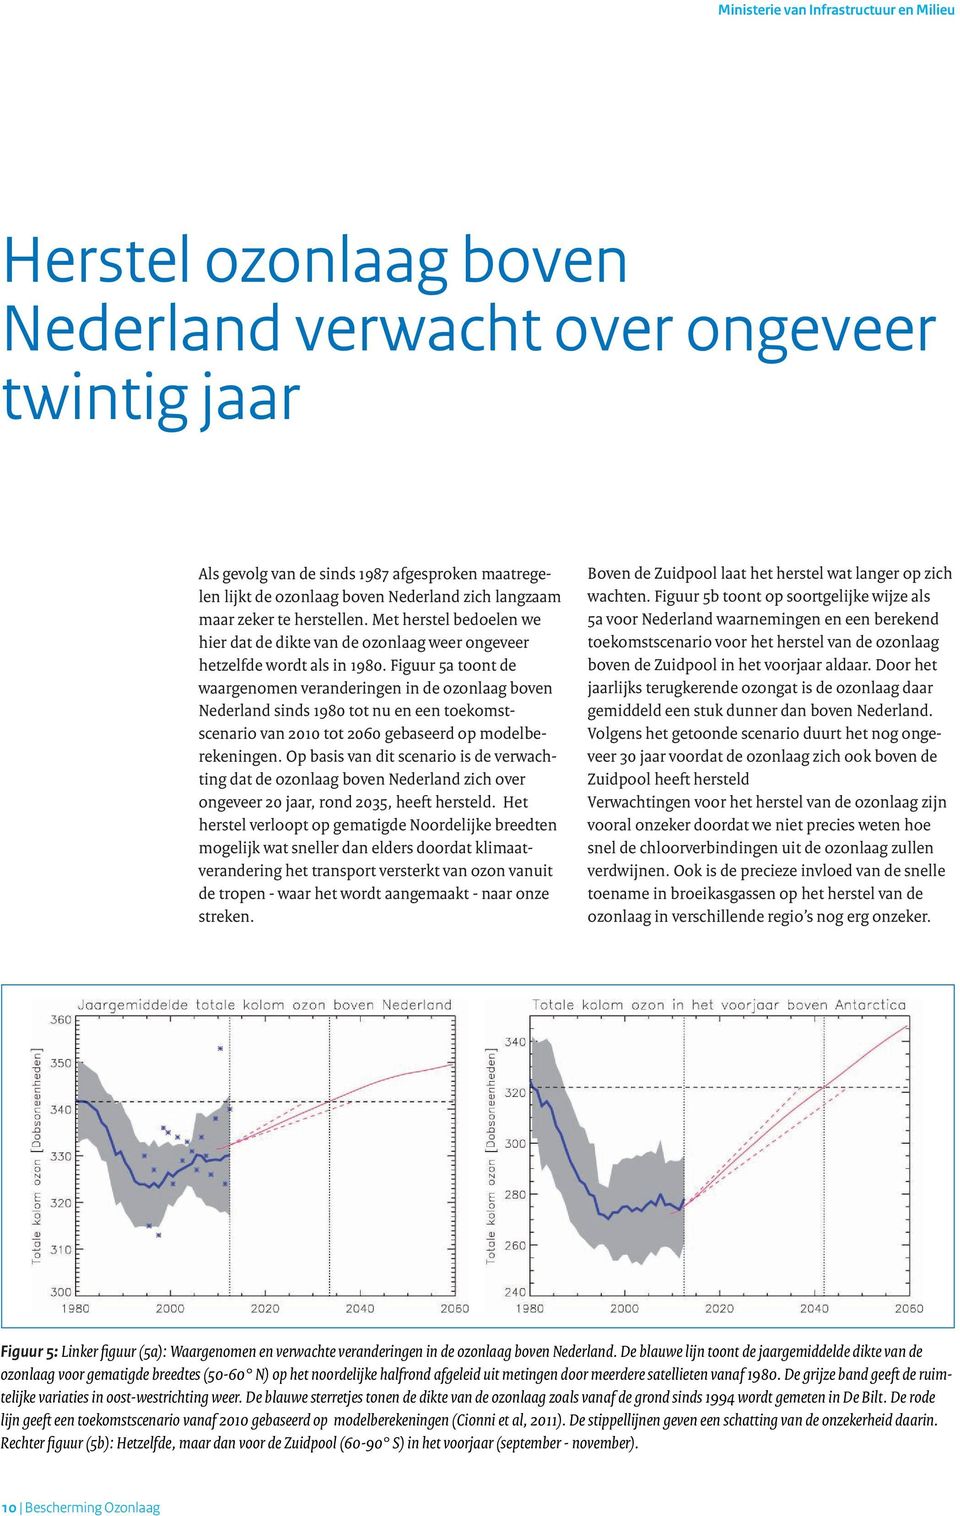 Figuur 5a toont de waargenomen veranderingen in de ozonlaag boven Nederland sinds 1980 tot nu en een toekomstscenario van 2010 tot 2060 gebaseerd op modelberekeningen.